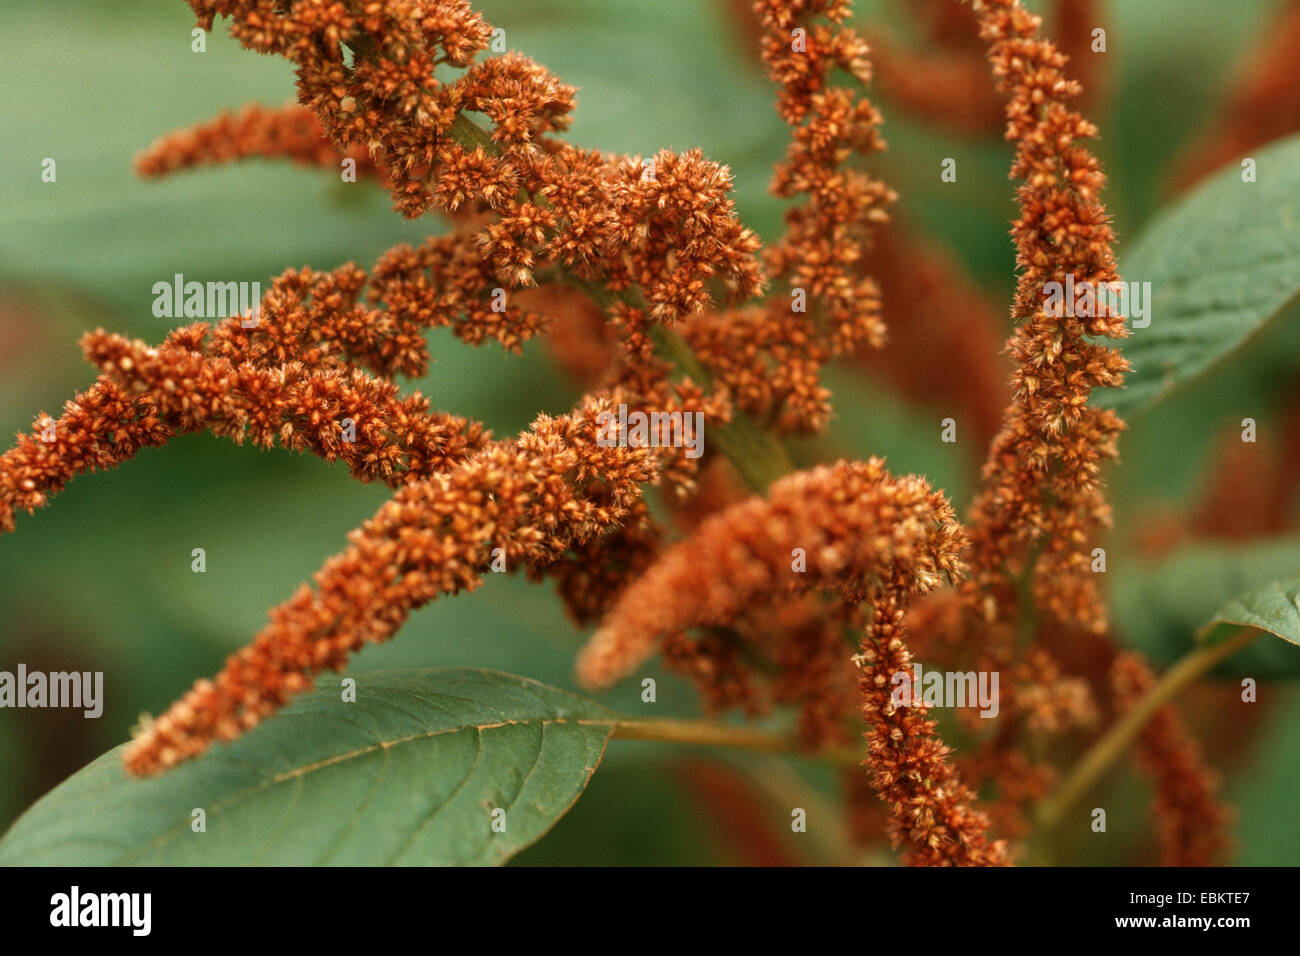 amaranth cultivar (Amaranthus 'Bronce Leaf', Amaranthus Bronce Leaf), inflorescence Stock Photo